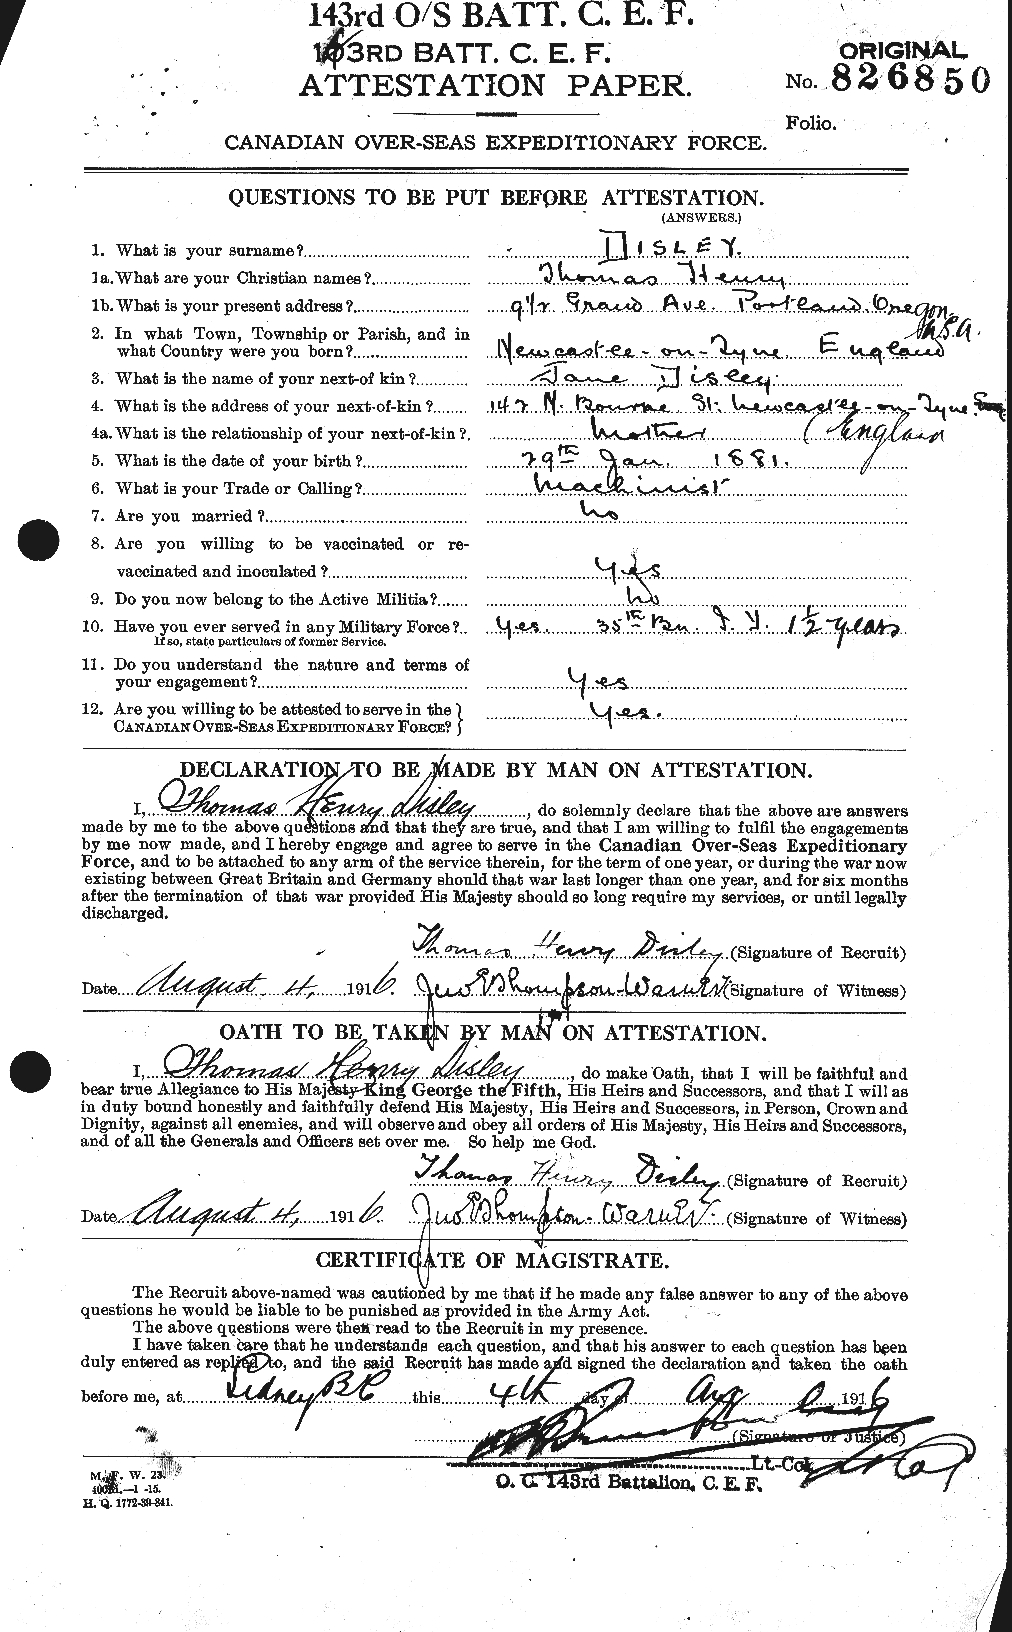 Dossiers du Personnel de la Première Guerre mondiale - CEC 292768a